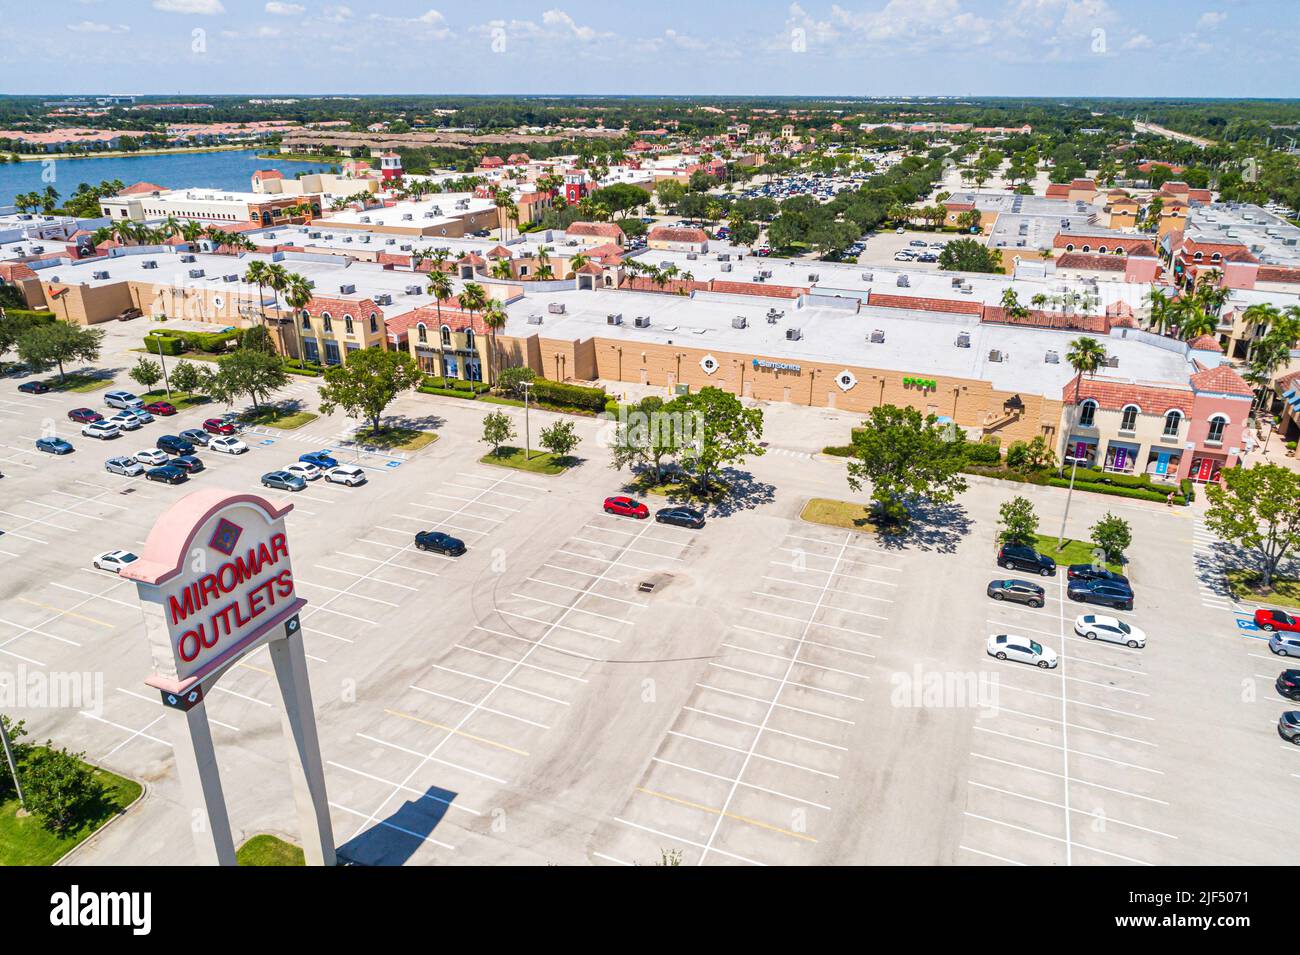 Estero Florida, Miromar Outlets designer nome marca fabbrica outlet centro commerciale, aereo da sopra vista, parcheggio auto Foto Stock